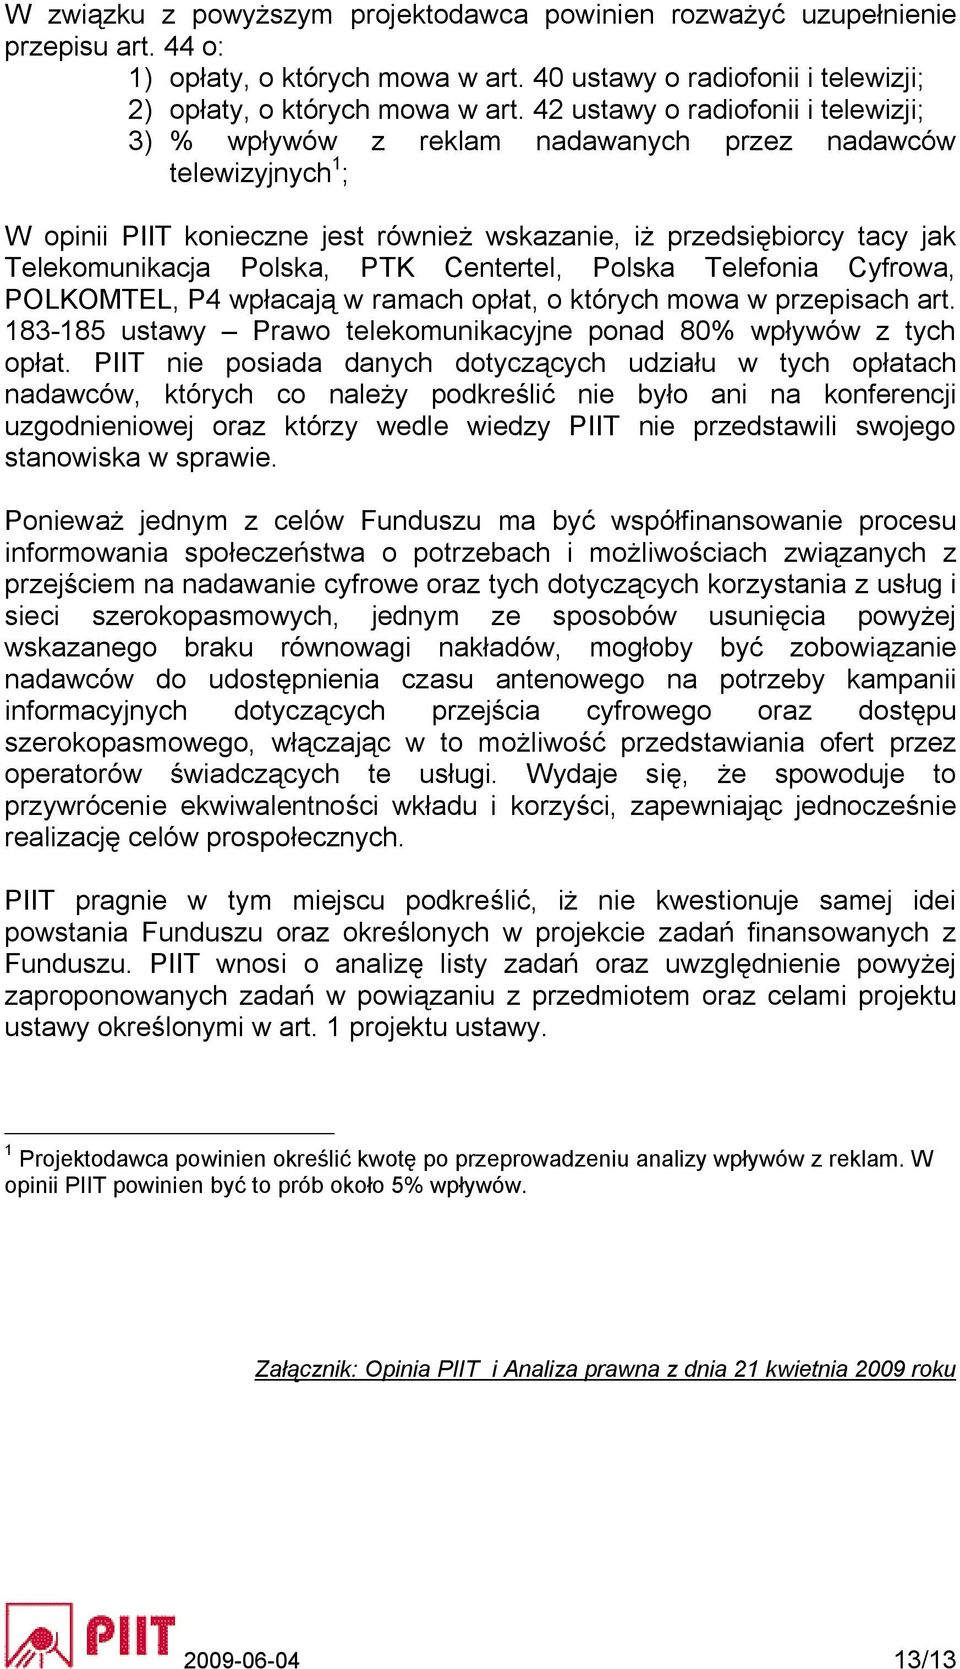 Polska, PTK Centertel, Polska Telefonia Cyfrowa, POLKOMTEL, P4 wpłacają w ramach opłat, o których mowa w przepisach art. 183-185 ustawy Prawo telekomunikacyjne ponad 80% wpływów z tych opłat.